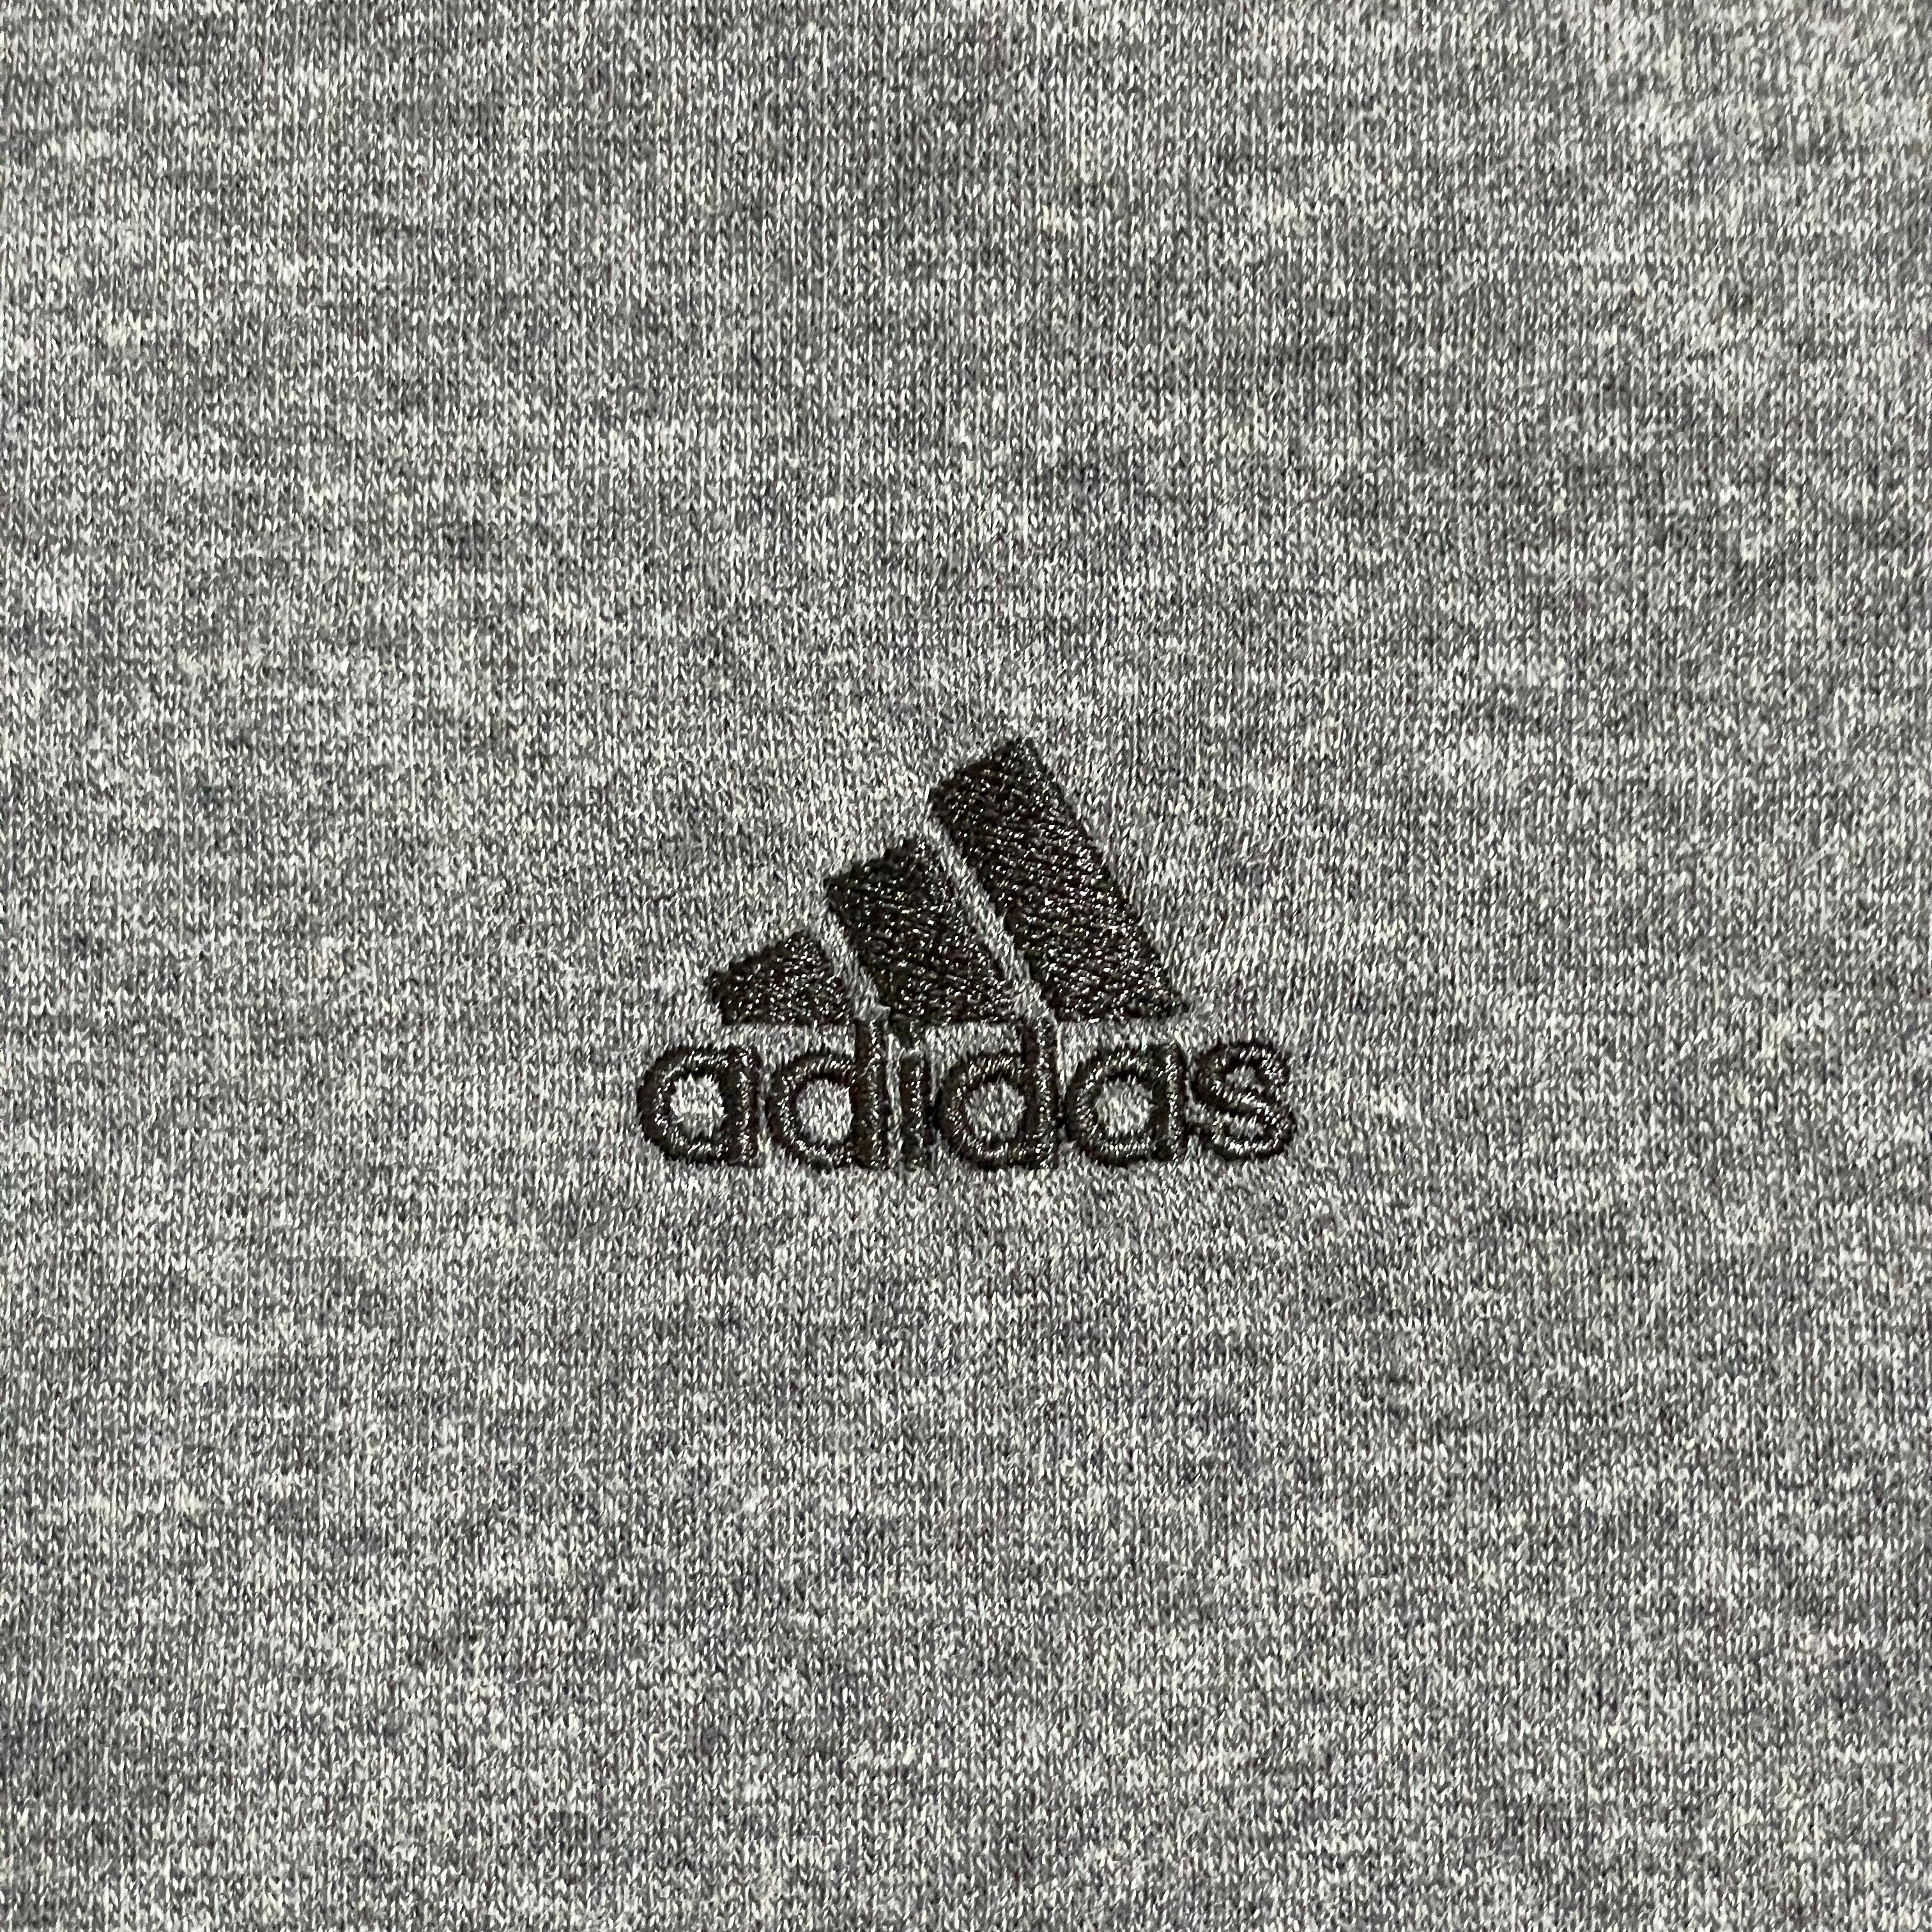 adidas】ジップアップパーカー ワンポイントロゴ 刺繍ロゴ スウェット